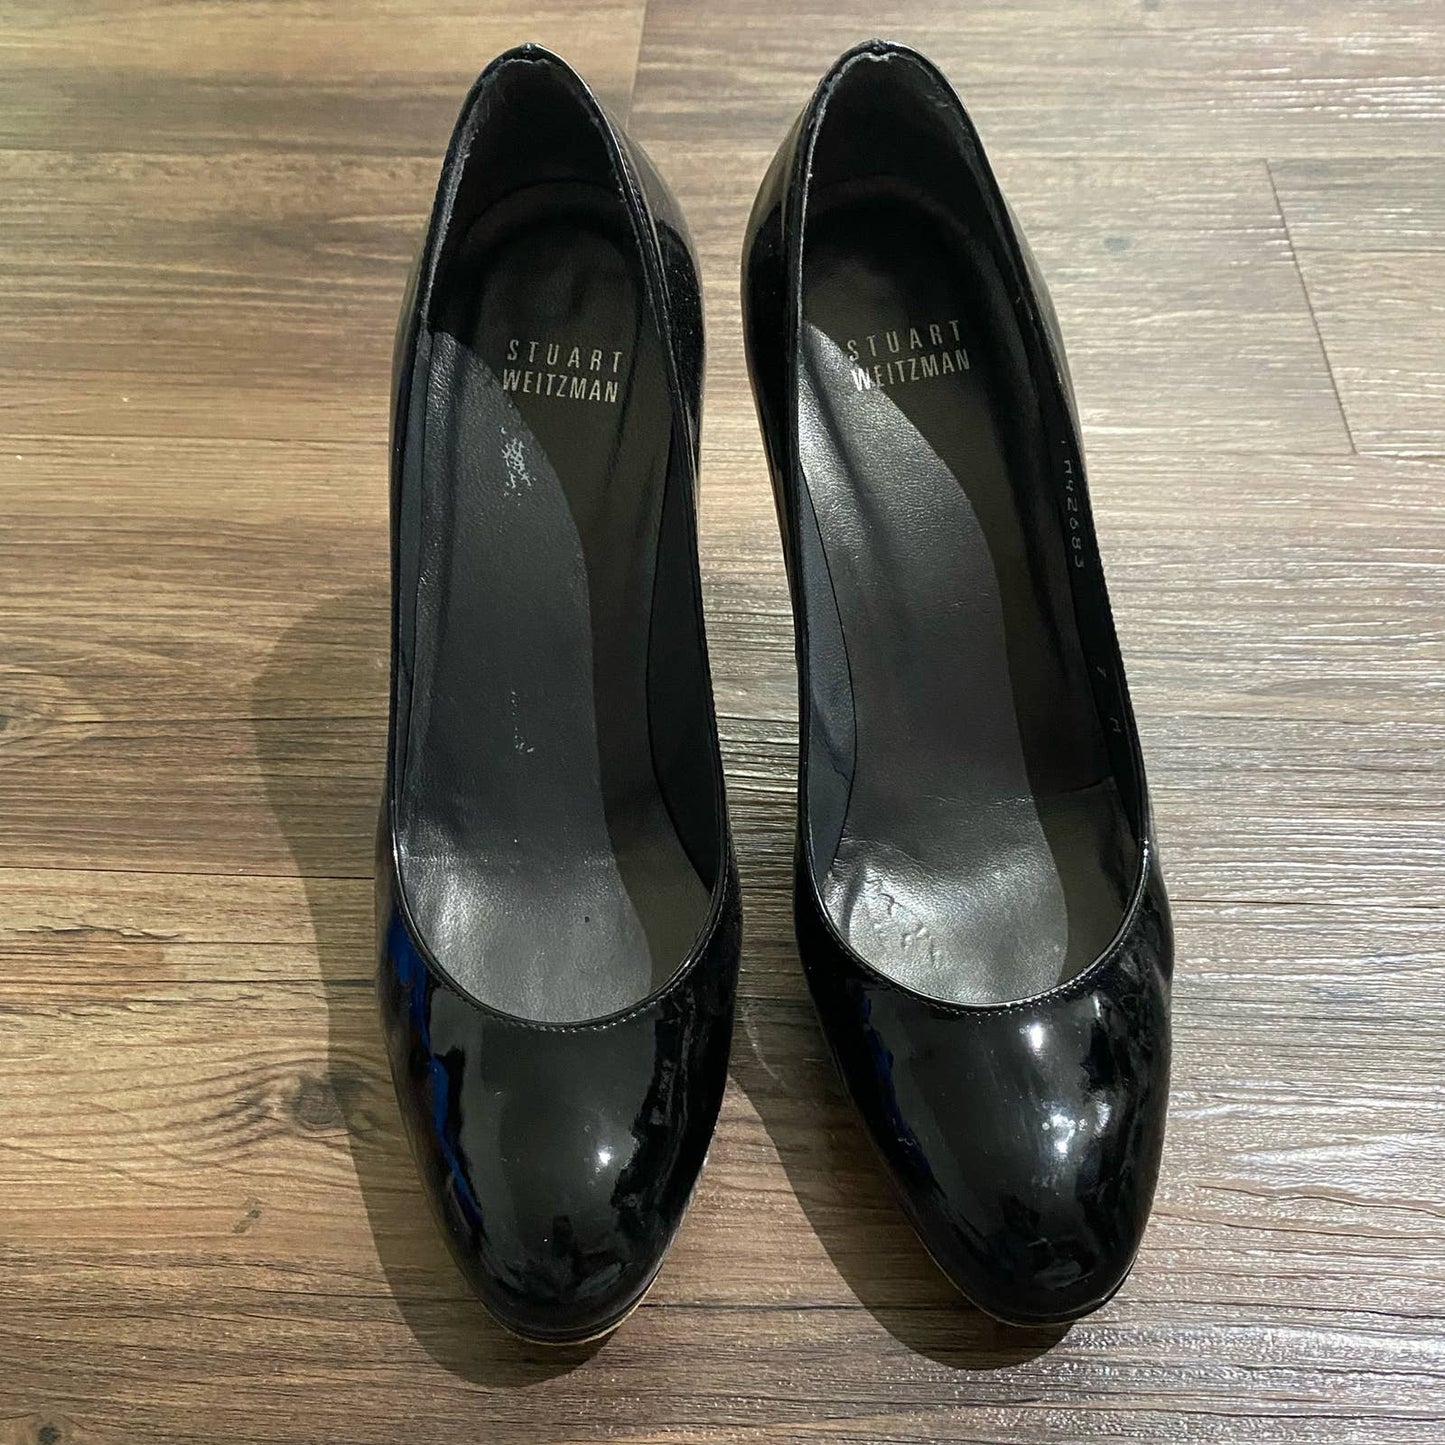 Stewart Weismann sz 7 patent leather heels